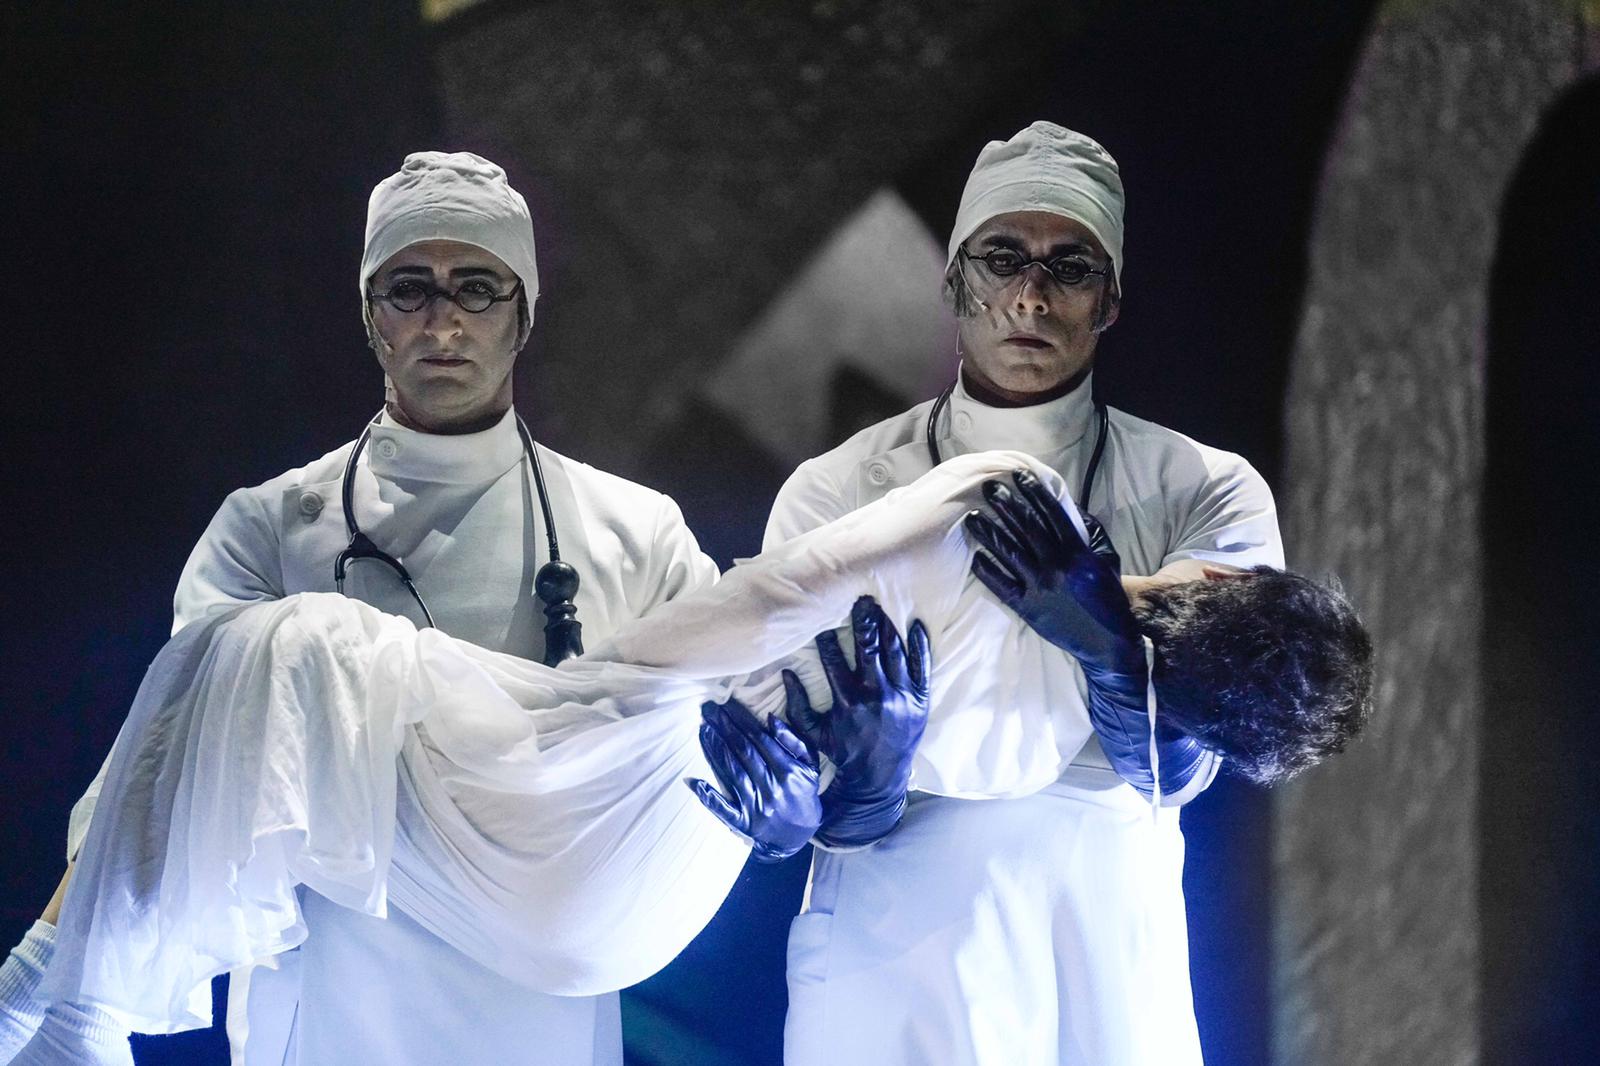 סצנה מתוך ההצגה "מתאבל ללא קץ". שני רופאים בבגדים לבנים נושאים ילד מת